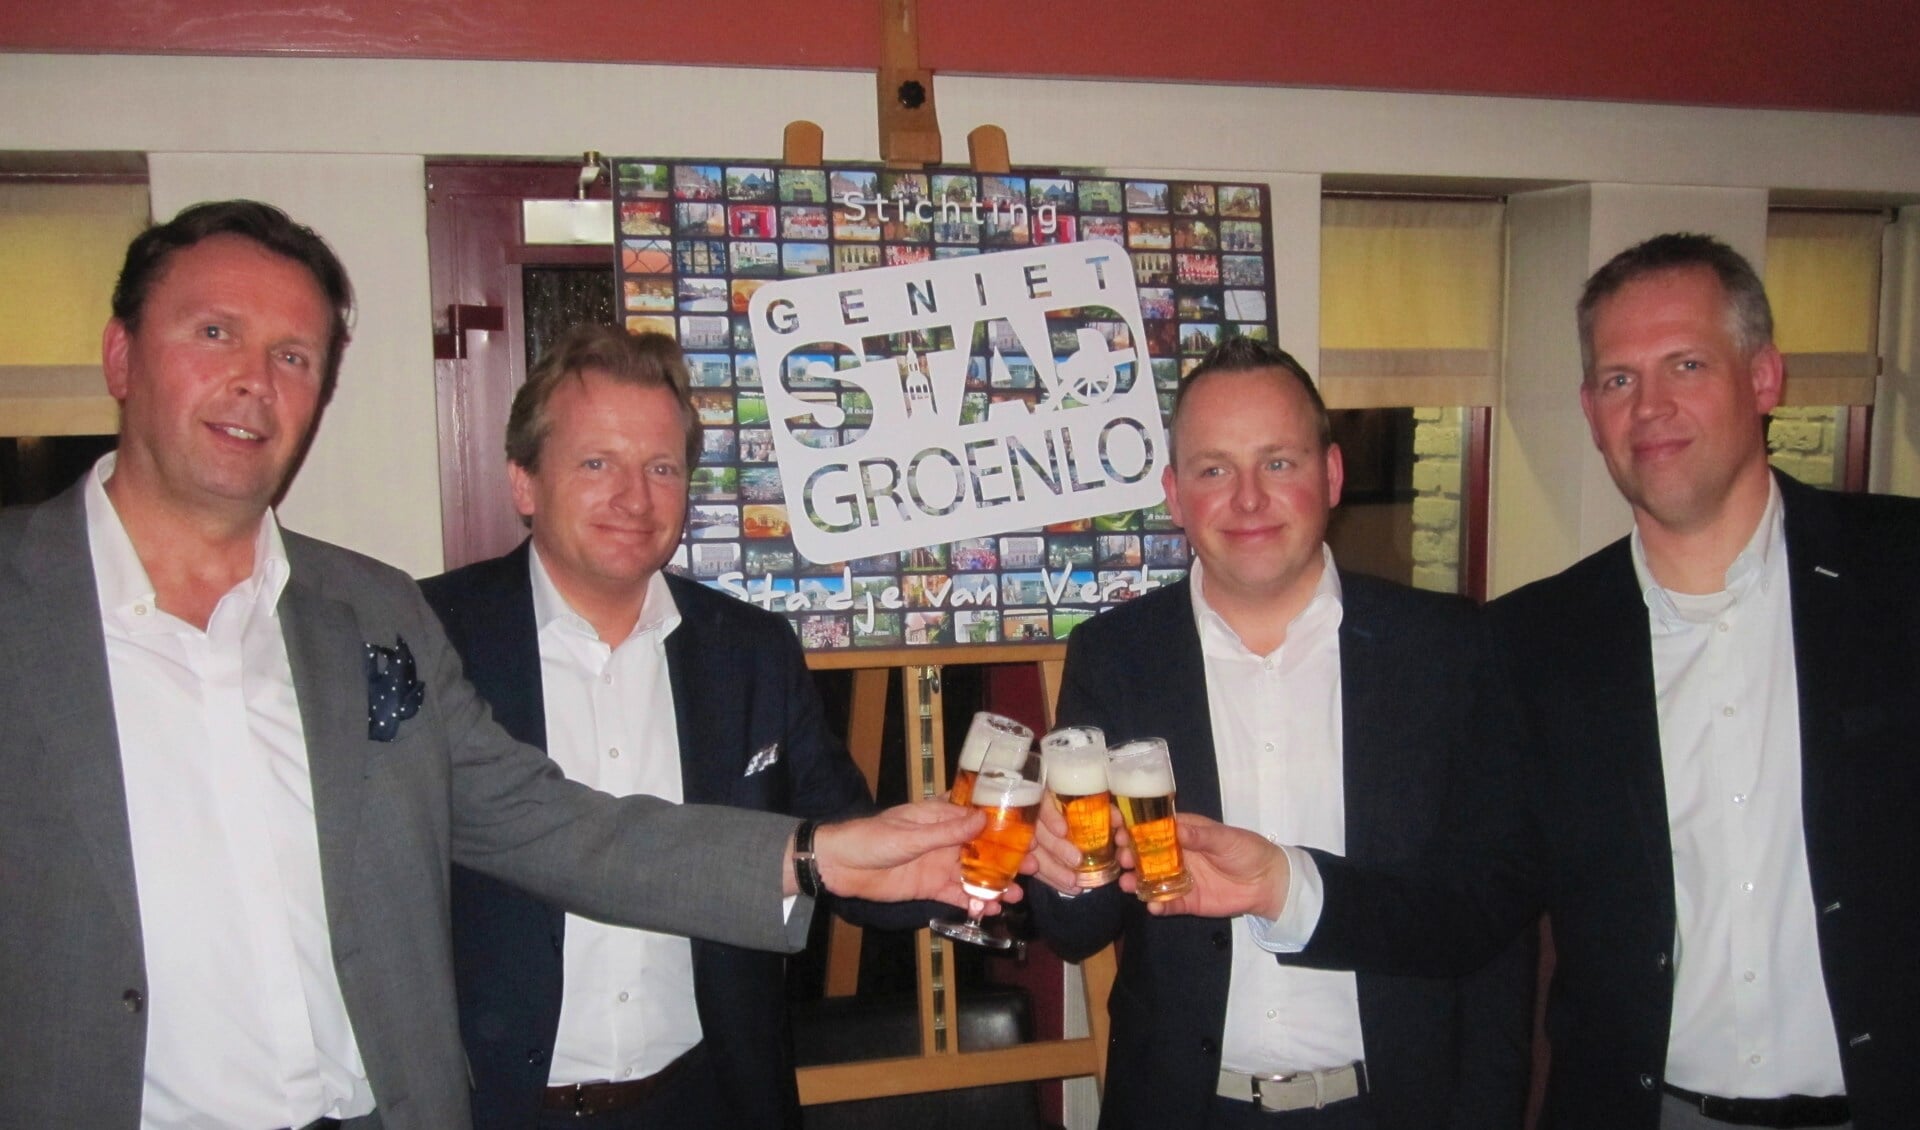 De presentatie van de Stichting Geniet Stad Groenlo begin 2014. Foto: Theo Huijskes